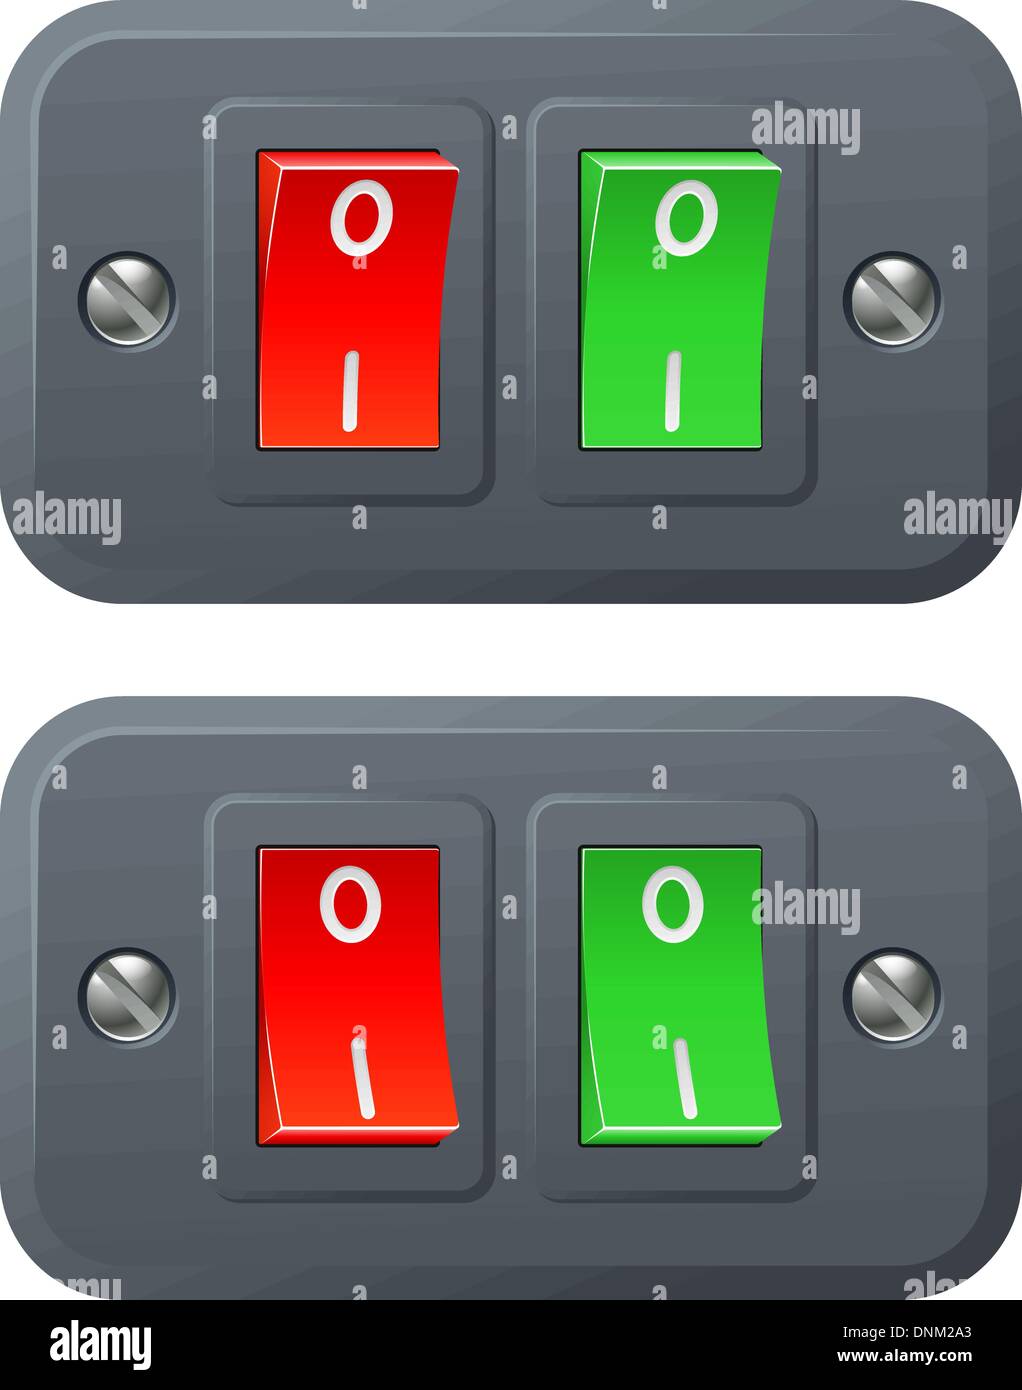 Illustrazione del rosso e del verde degli interruttori in posizione di accensione e spegnimento Illustrazione Vettoriale